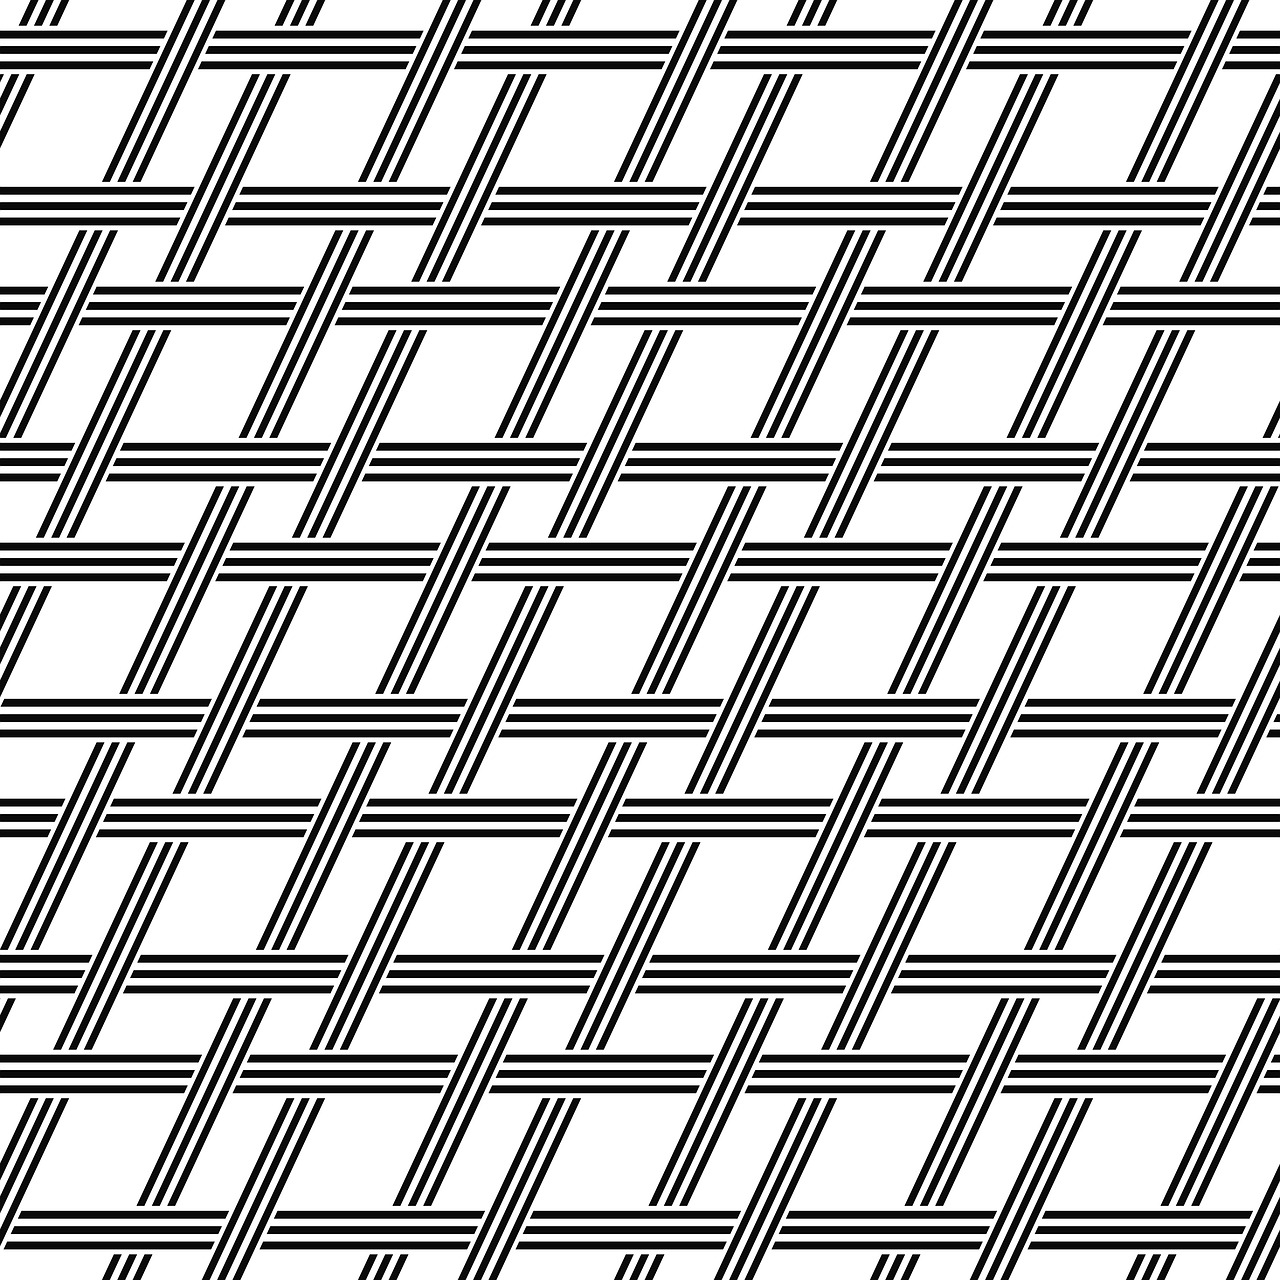 grid pattern seamless free photo